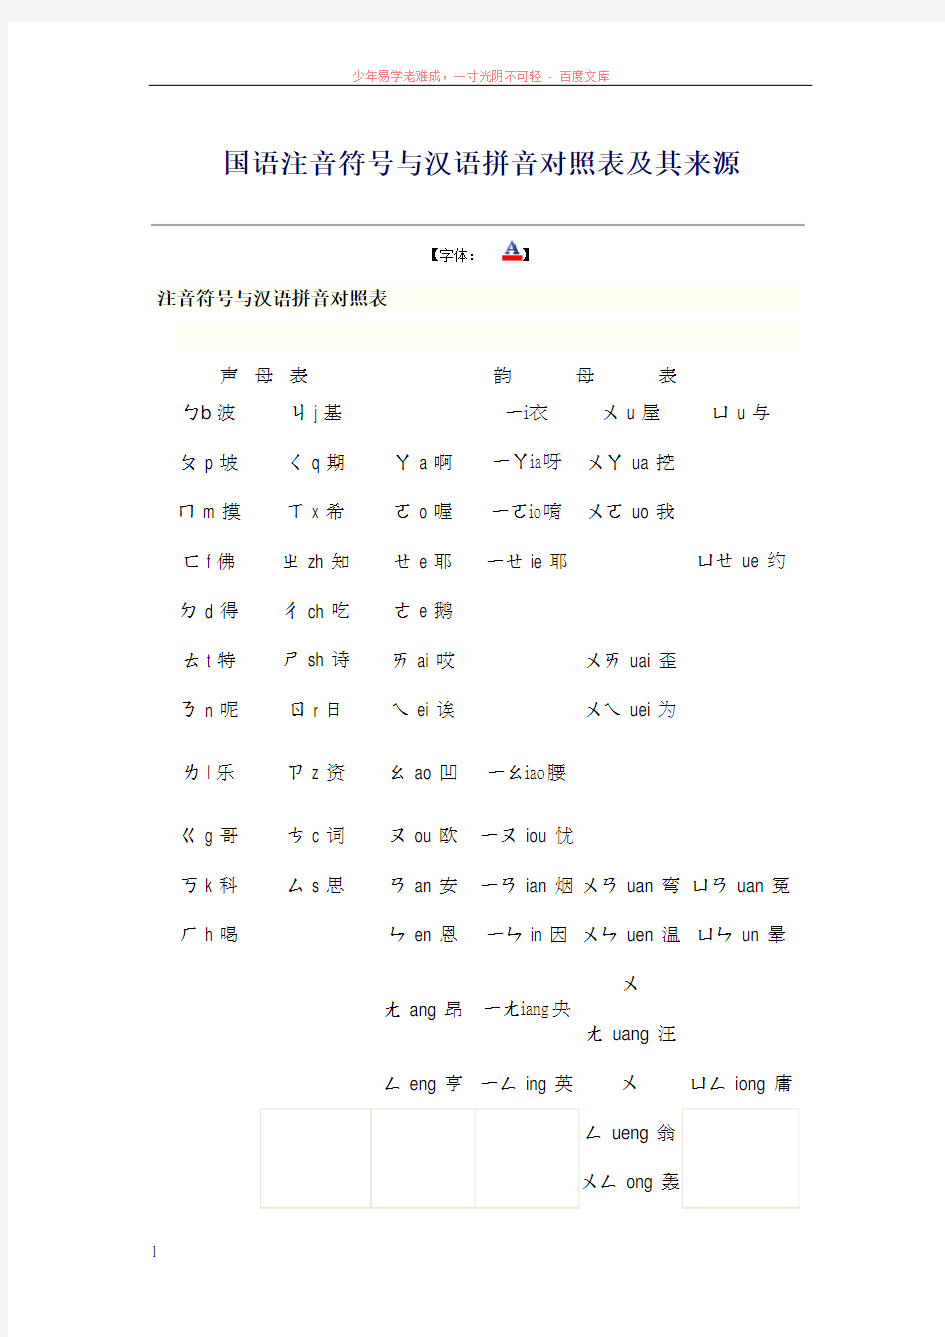 国语注音符号与汉语拼音对照表及其来源